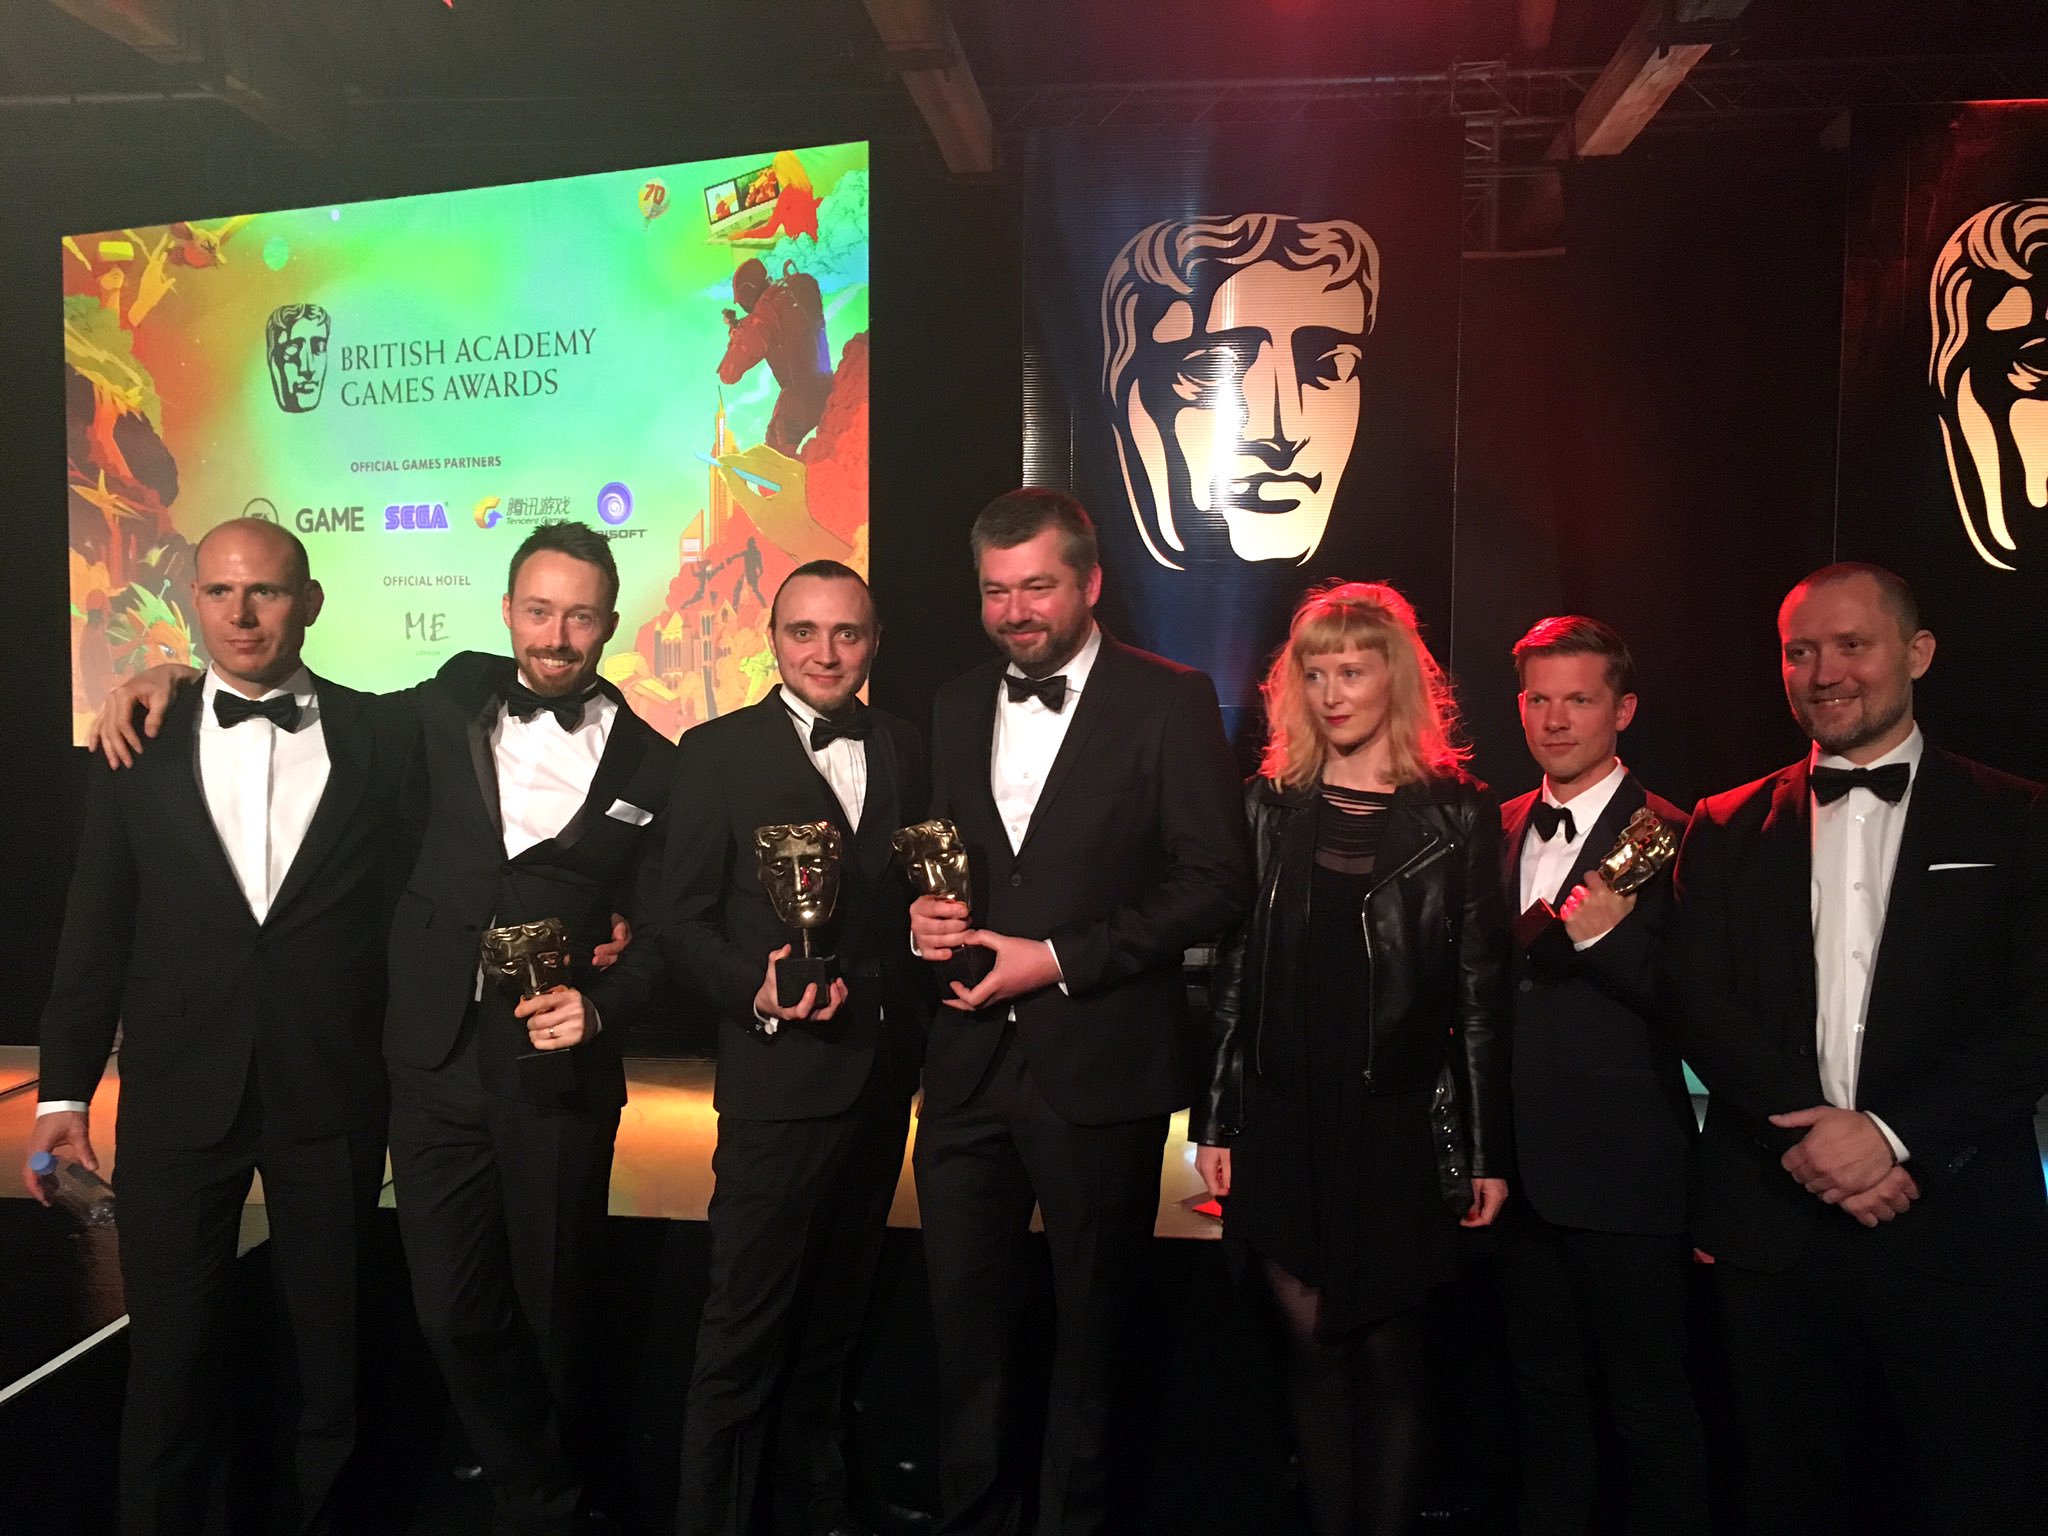 Mvszeti elismers a BAFTA Games Awards djtadn